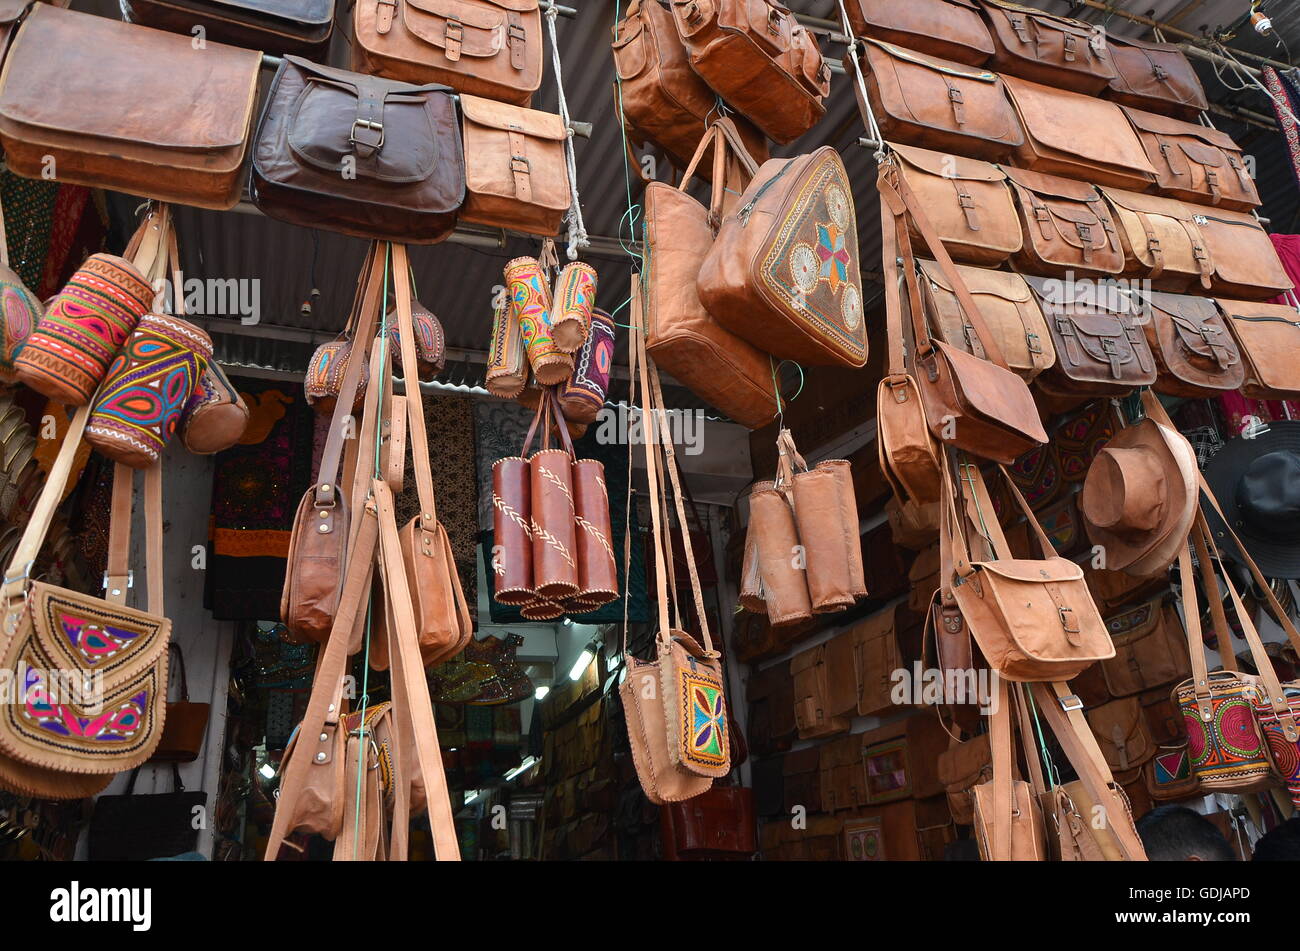 Un negozio di Pushkar Fair, India, vendita custodie pelle, sacchi, sacchetti, portafogli e decorativi vari articoli in pelle. Foto Stock